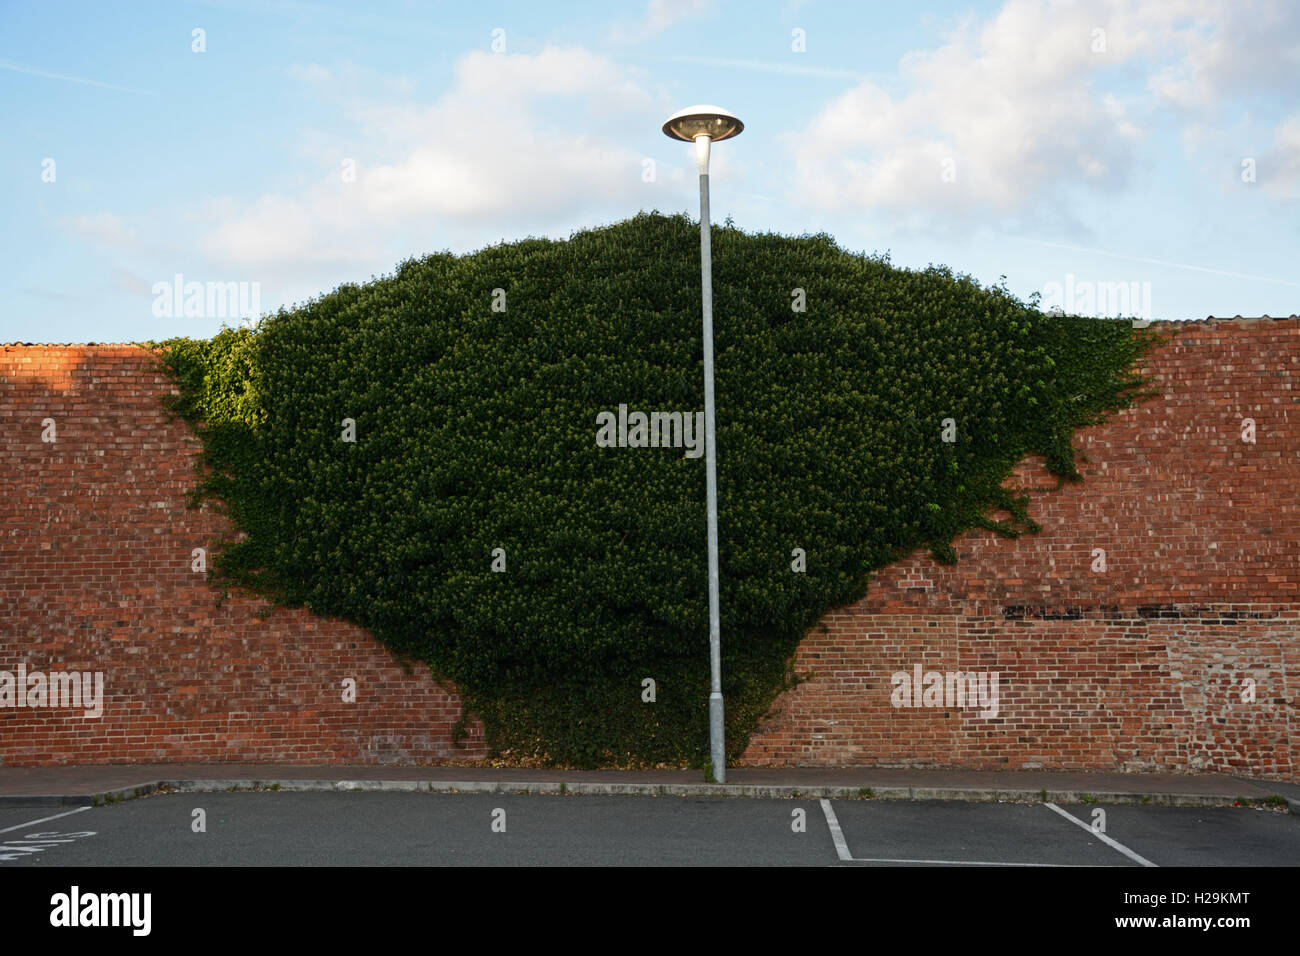 Kletterpflanze an strukturierten Wand mit Laternenpfahl. Stockfoto